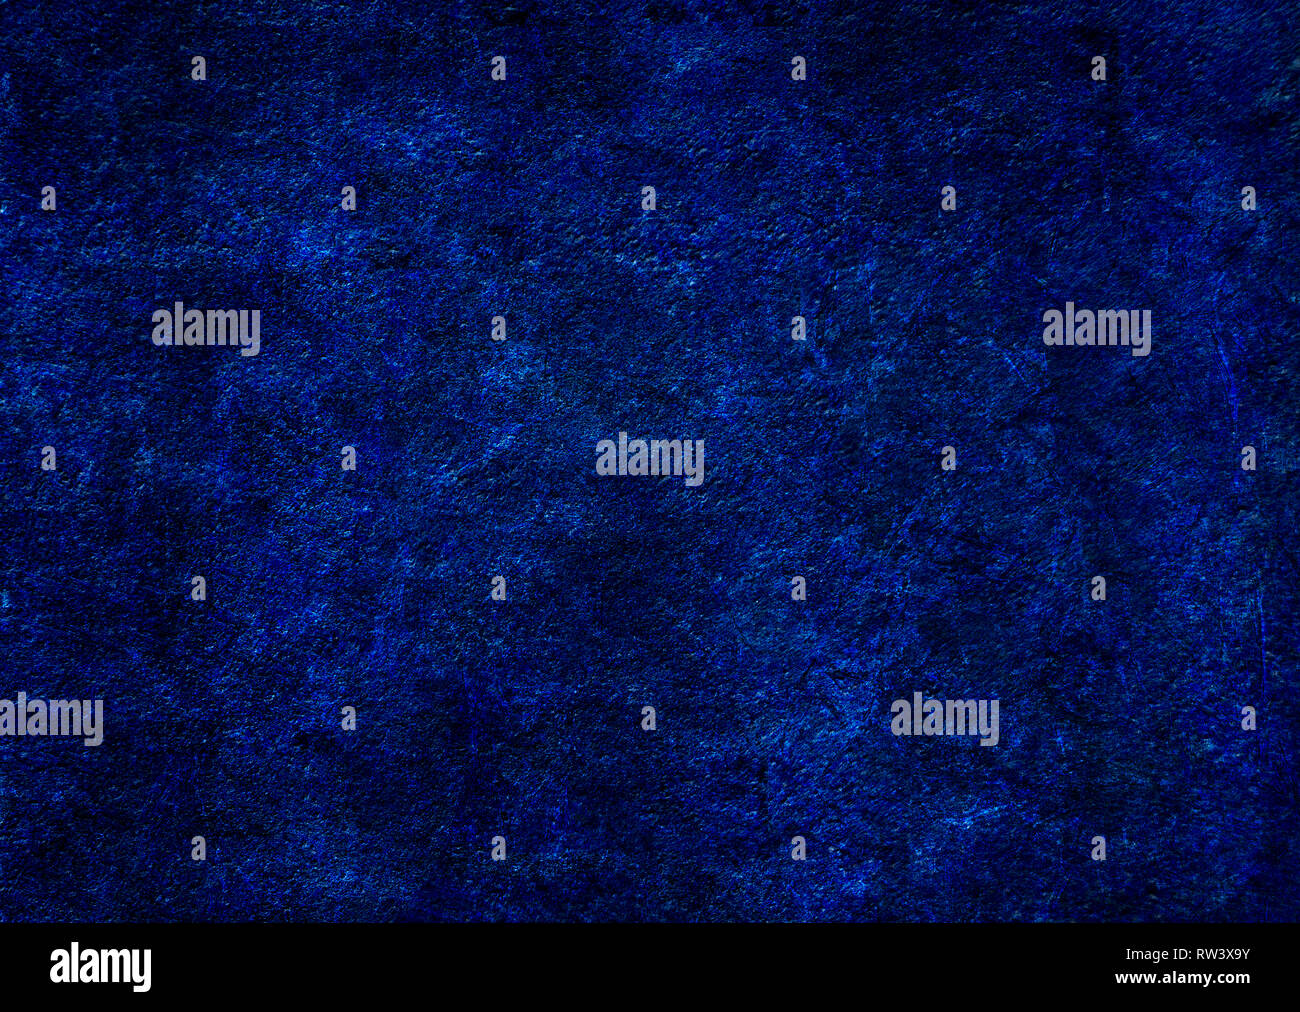 Blu scuro dello sfondo grunge con leggermente glowy graffi. Foto Stock